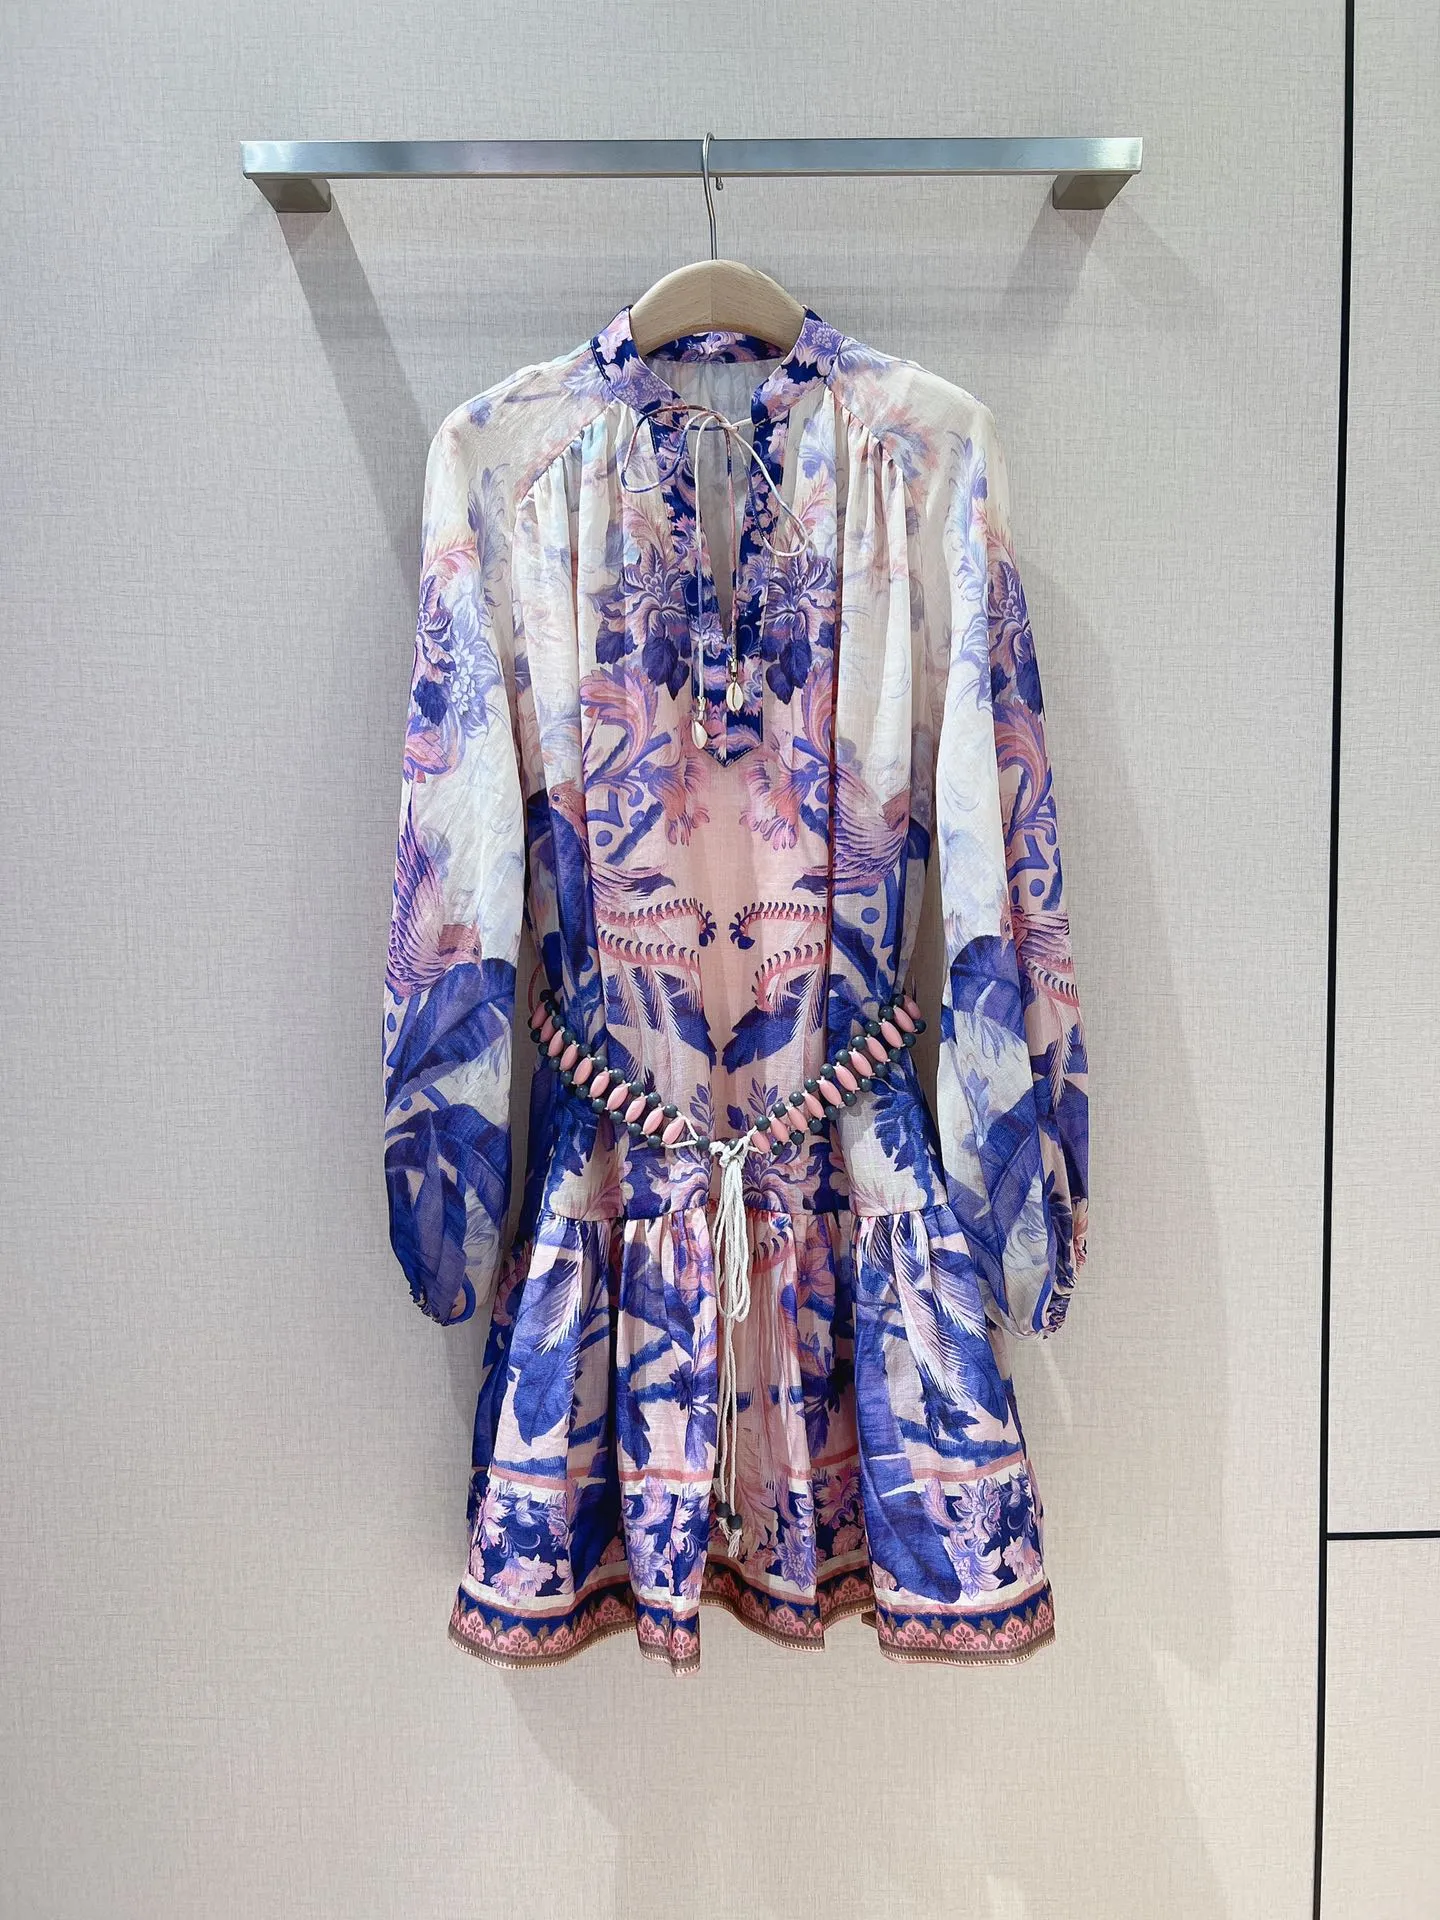 활주로 드레스 기질 v 스탠드 드레스 유럽 디자이너 럭셔리 칼라 디자인 꿈꾸는 보라색 패턴 인쇄 랜턴 슬리브 스타일